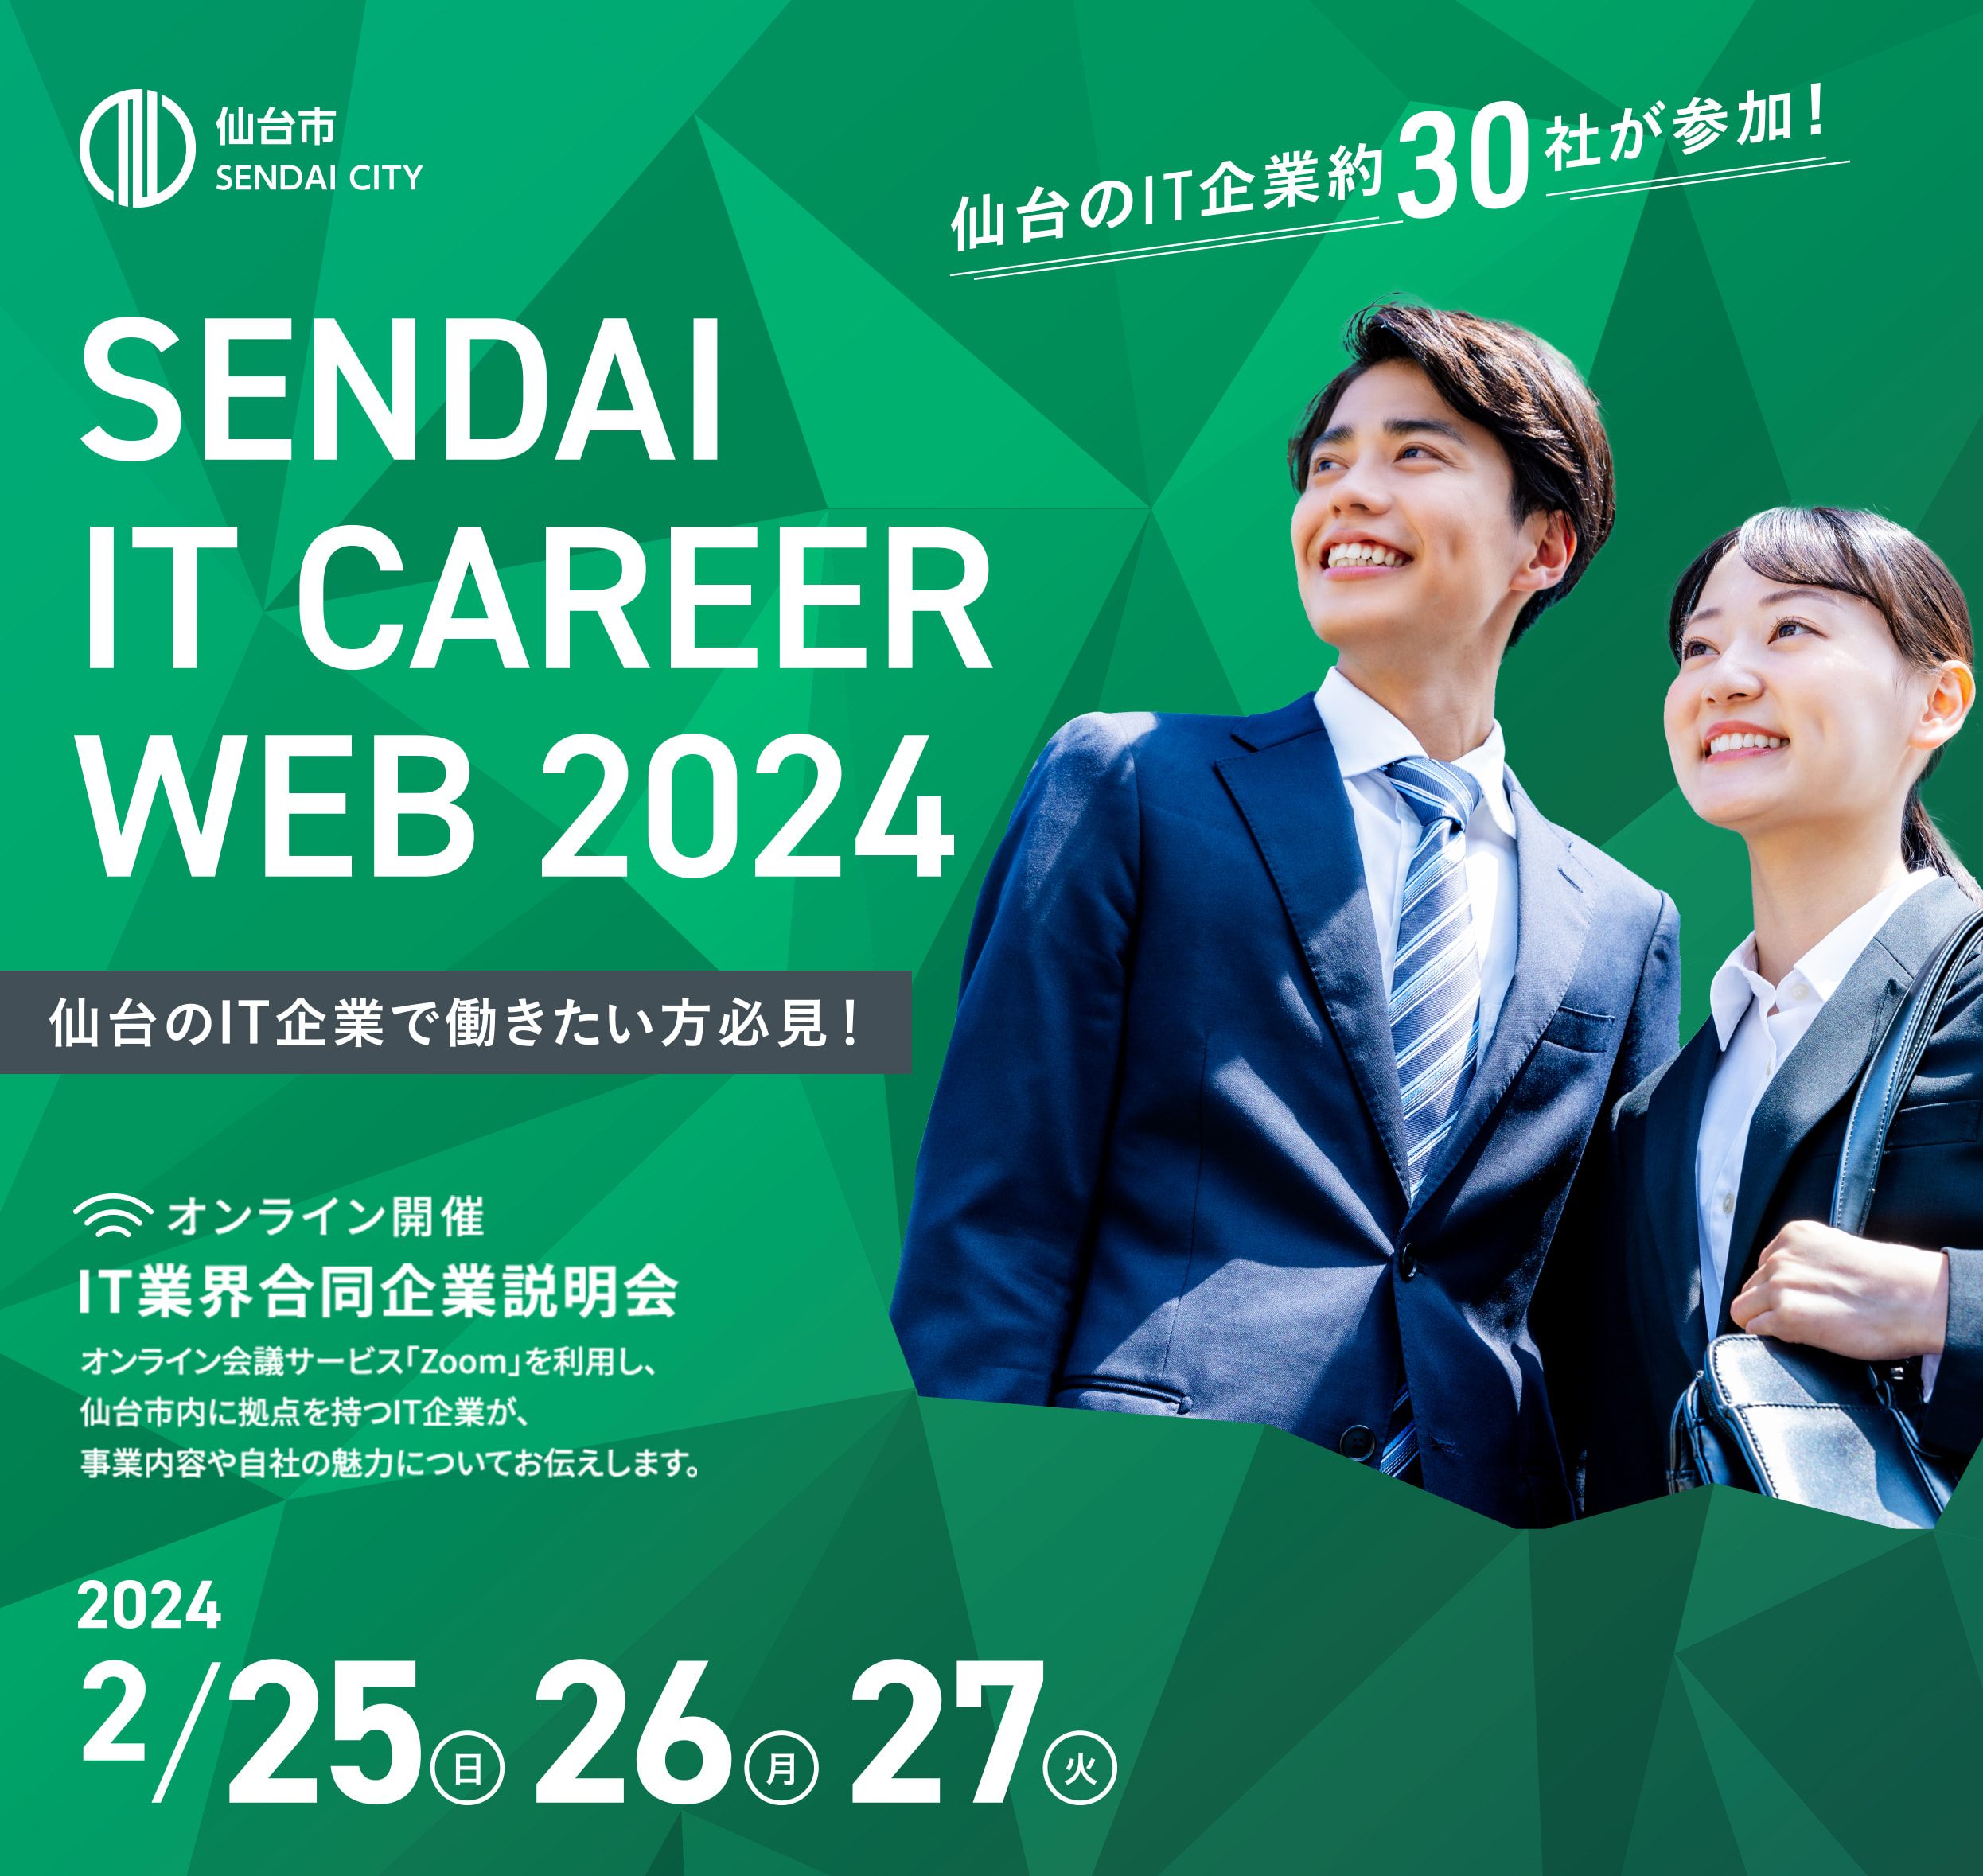 仙台のIT企業で働きたい方必見。オンライン開催IT業界合同企業説明会。開催日は2月25日(日)26日(月)27(火)